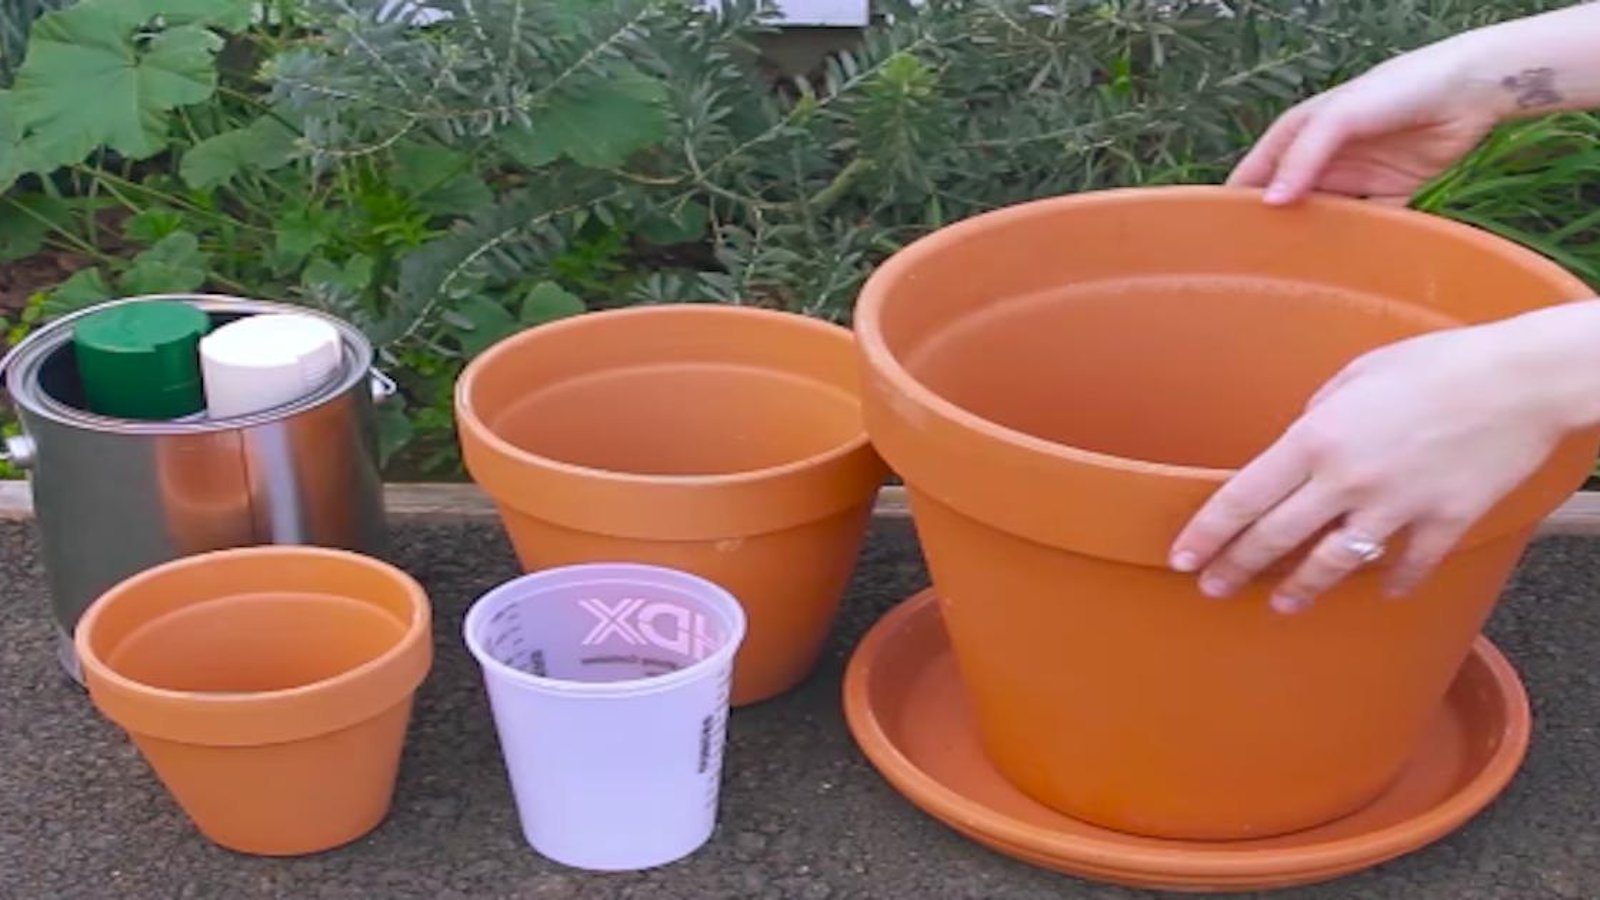 15 projets vraiment cool à réaliser avec des pots en terre cuite! 